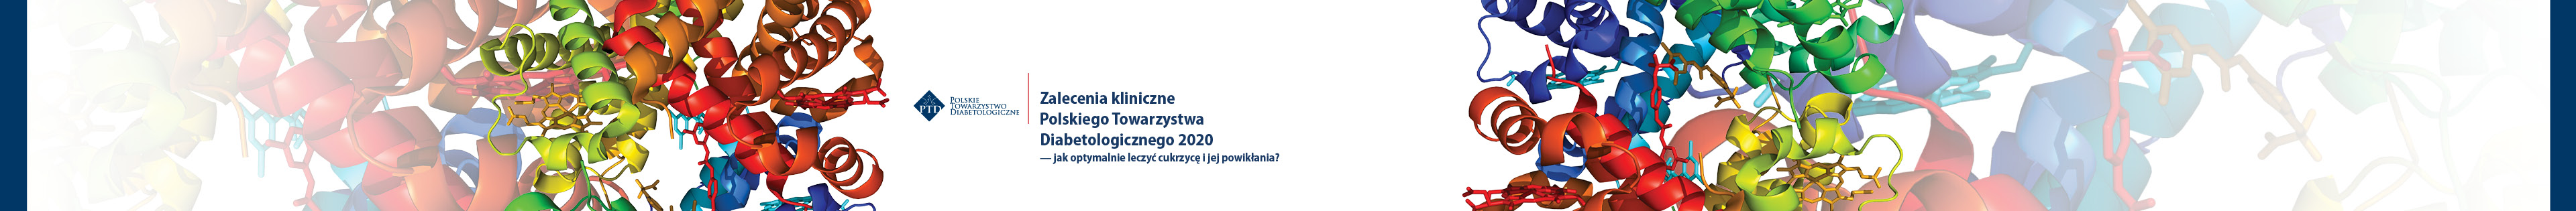 Zalecenia PTD 2020 - Warszawa